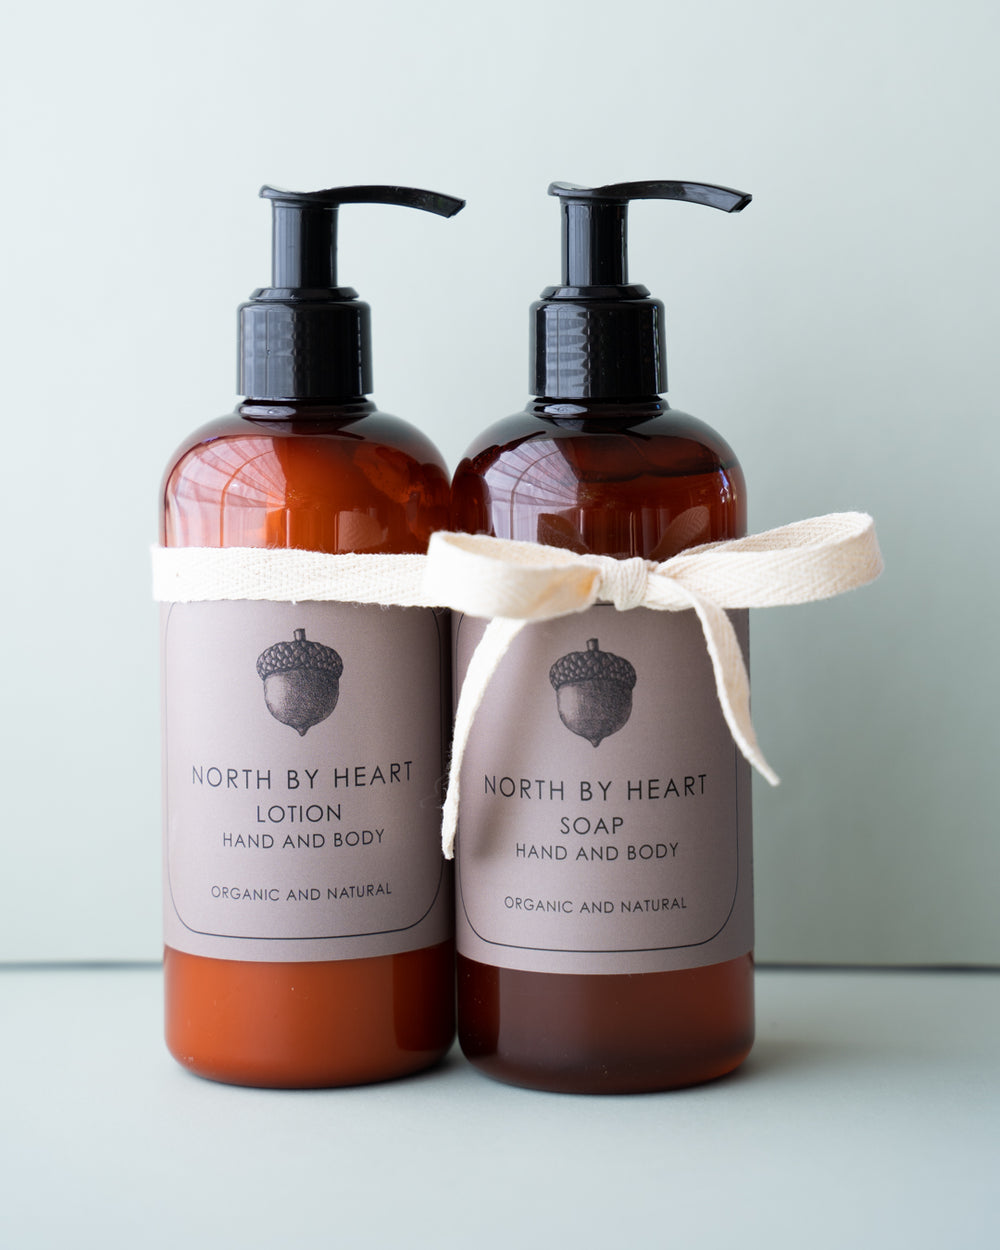 North by Heart økologisk og naturlig hånd og body soap, hånd og bodylotion, 300 ml.